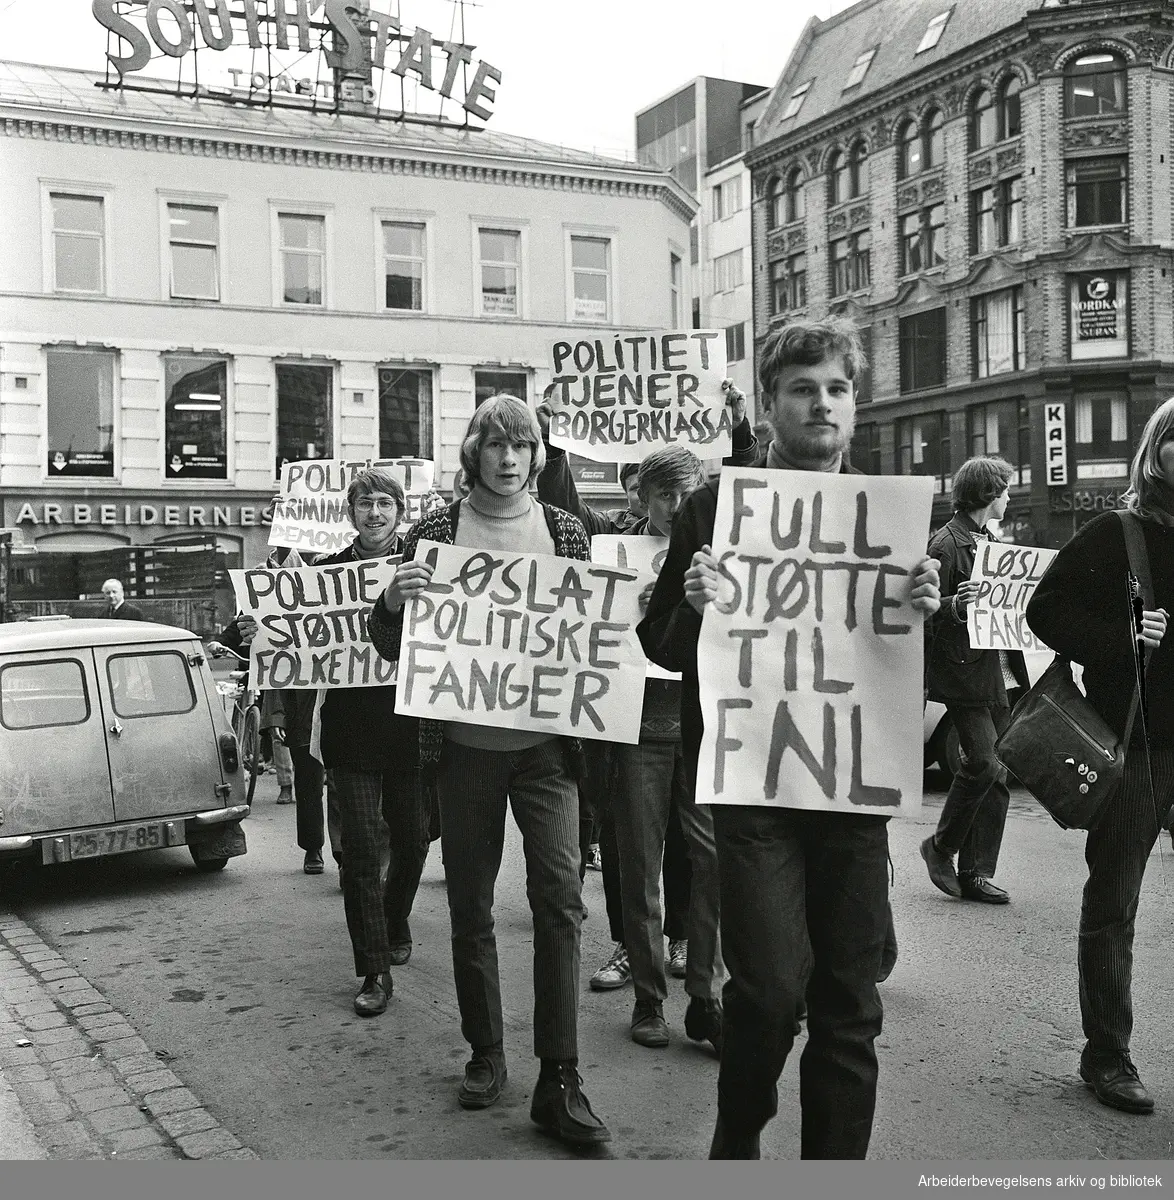 Vietnam-demonstrasjon i Oslo. "Full støtte til FNL", "Politiet tjener storkapitalen" og "Løslat politiske fanger". April 1968